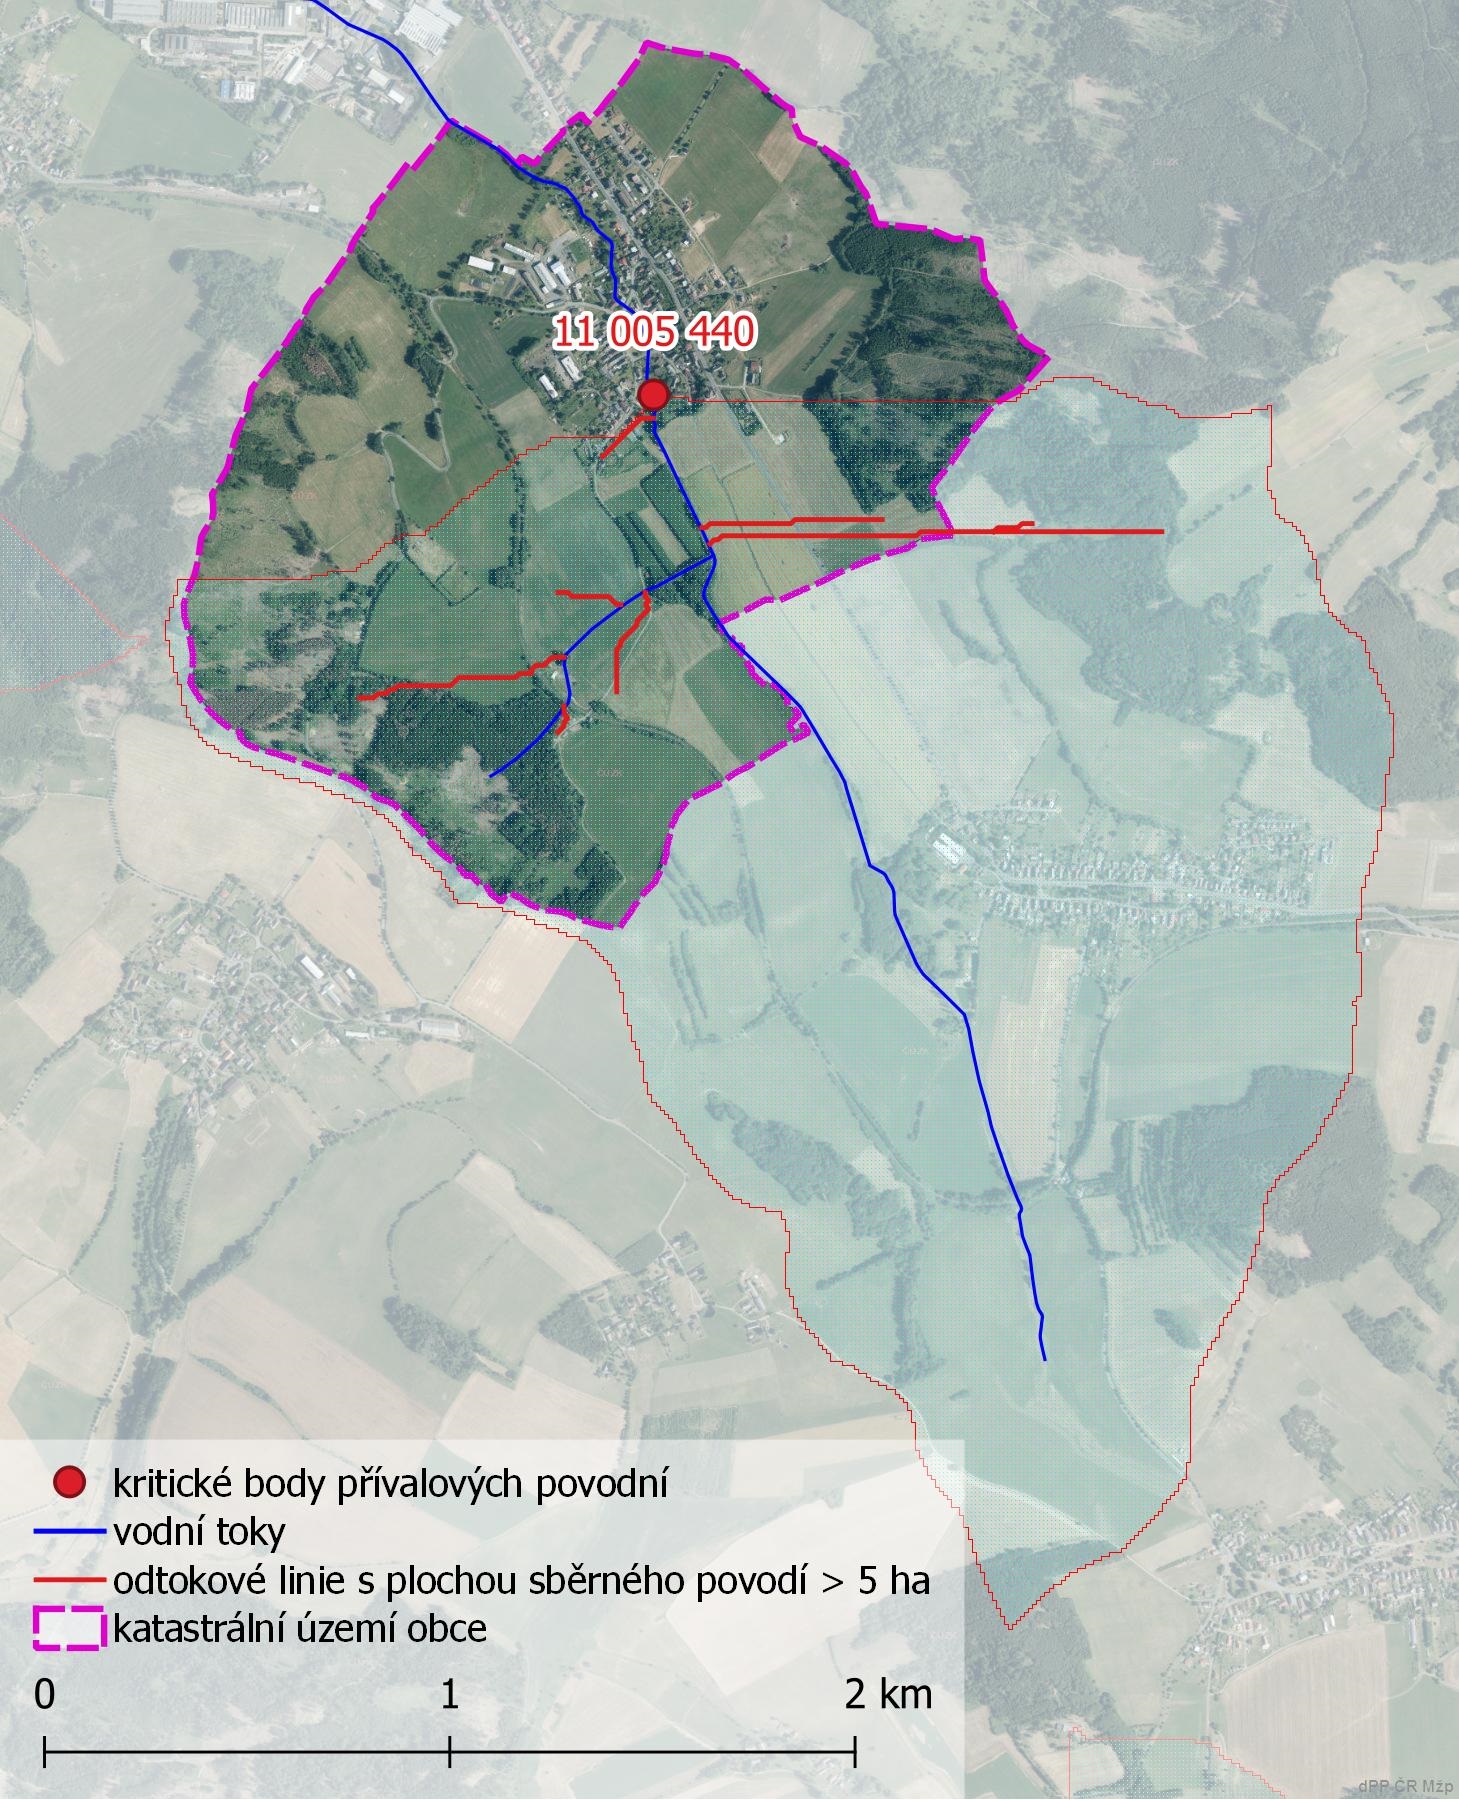 Kritické body na území obce Brnířov